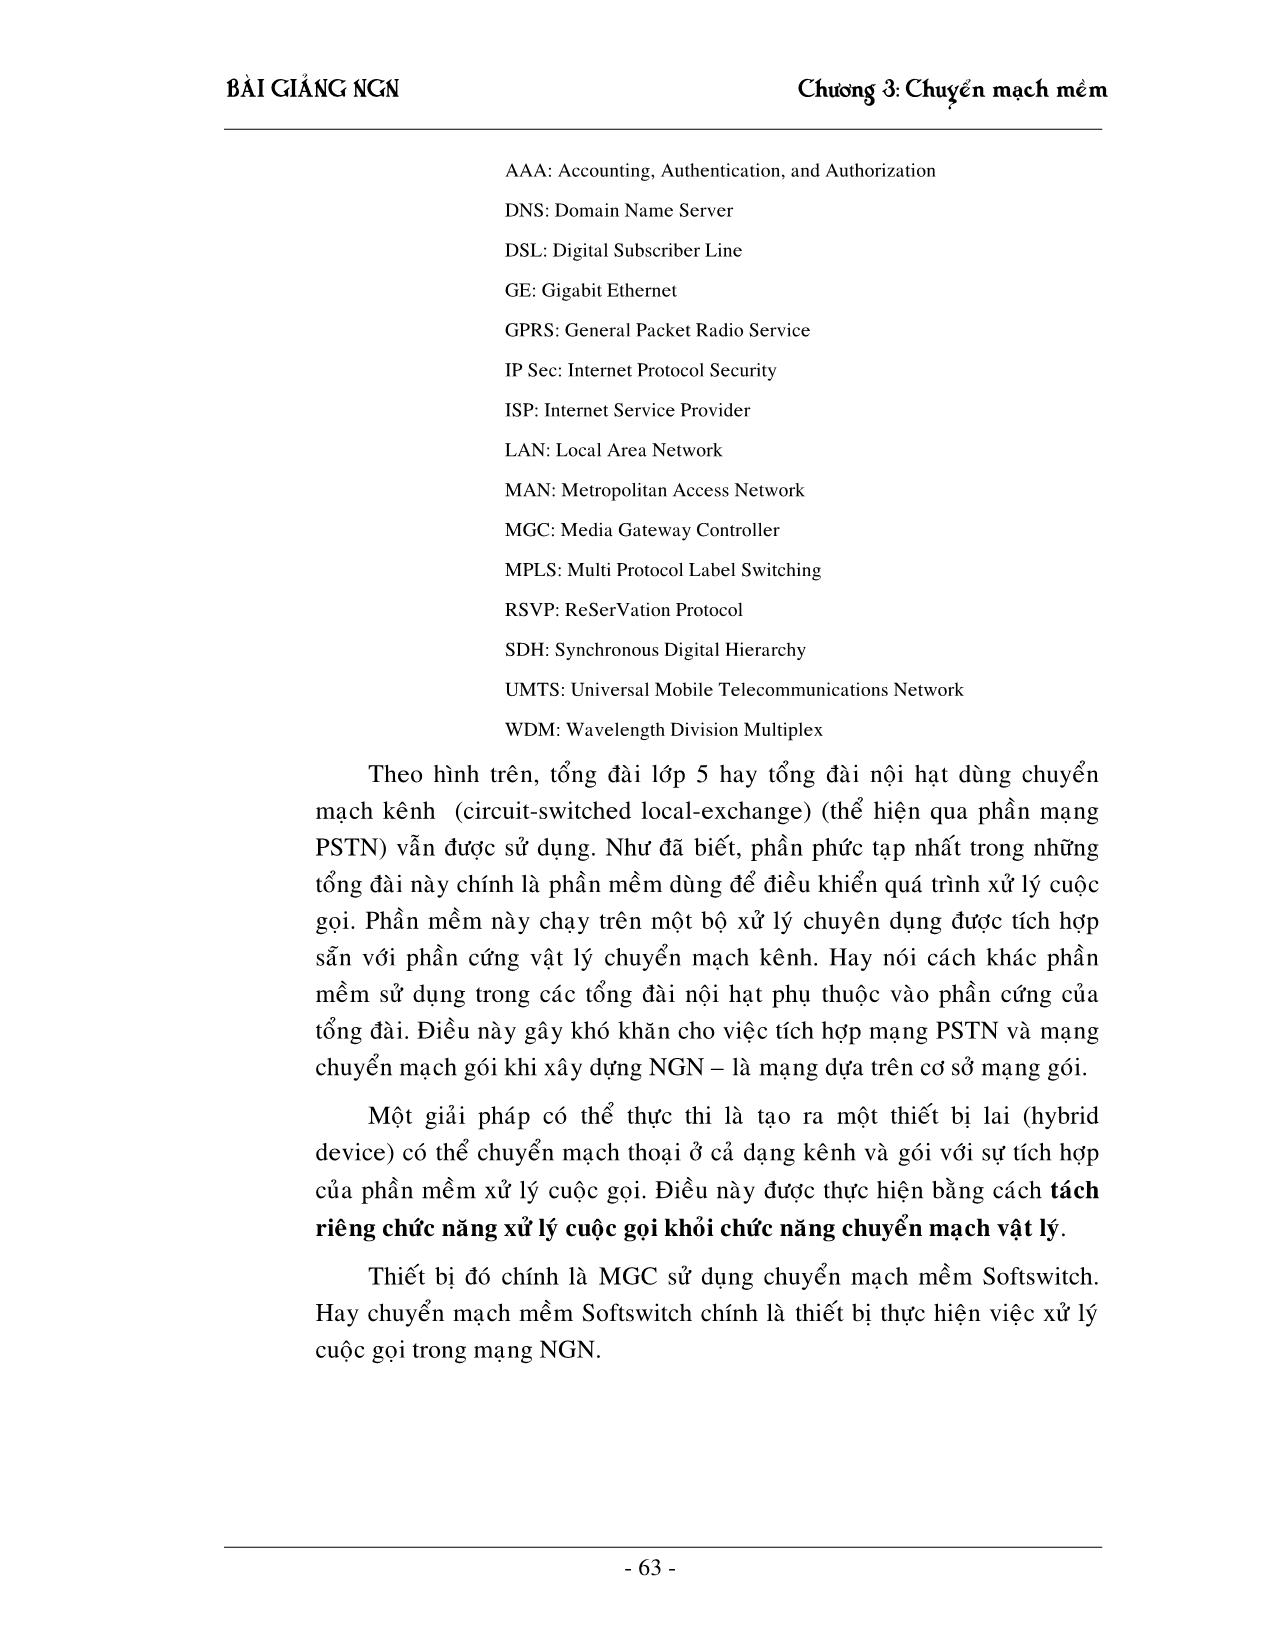 Giáo trình NGN - Chương 3: Chuyển mạch mềm Softswitching trang 5